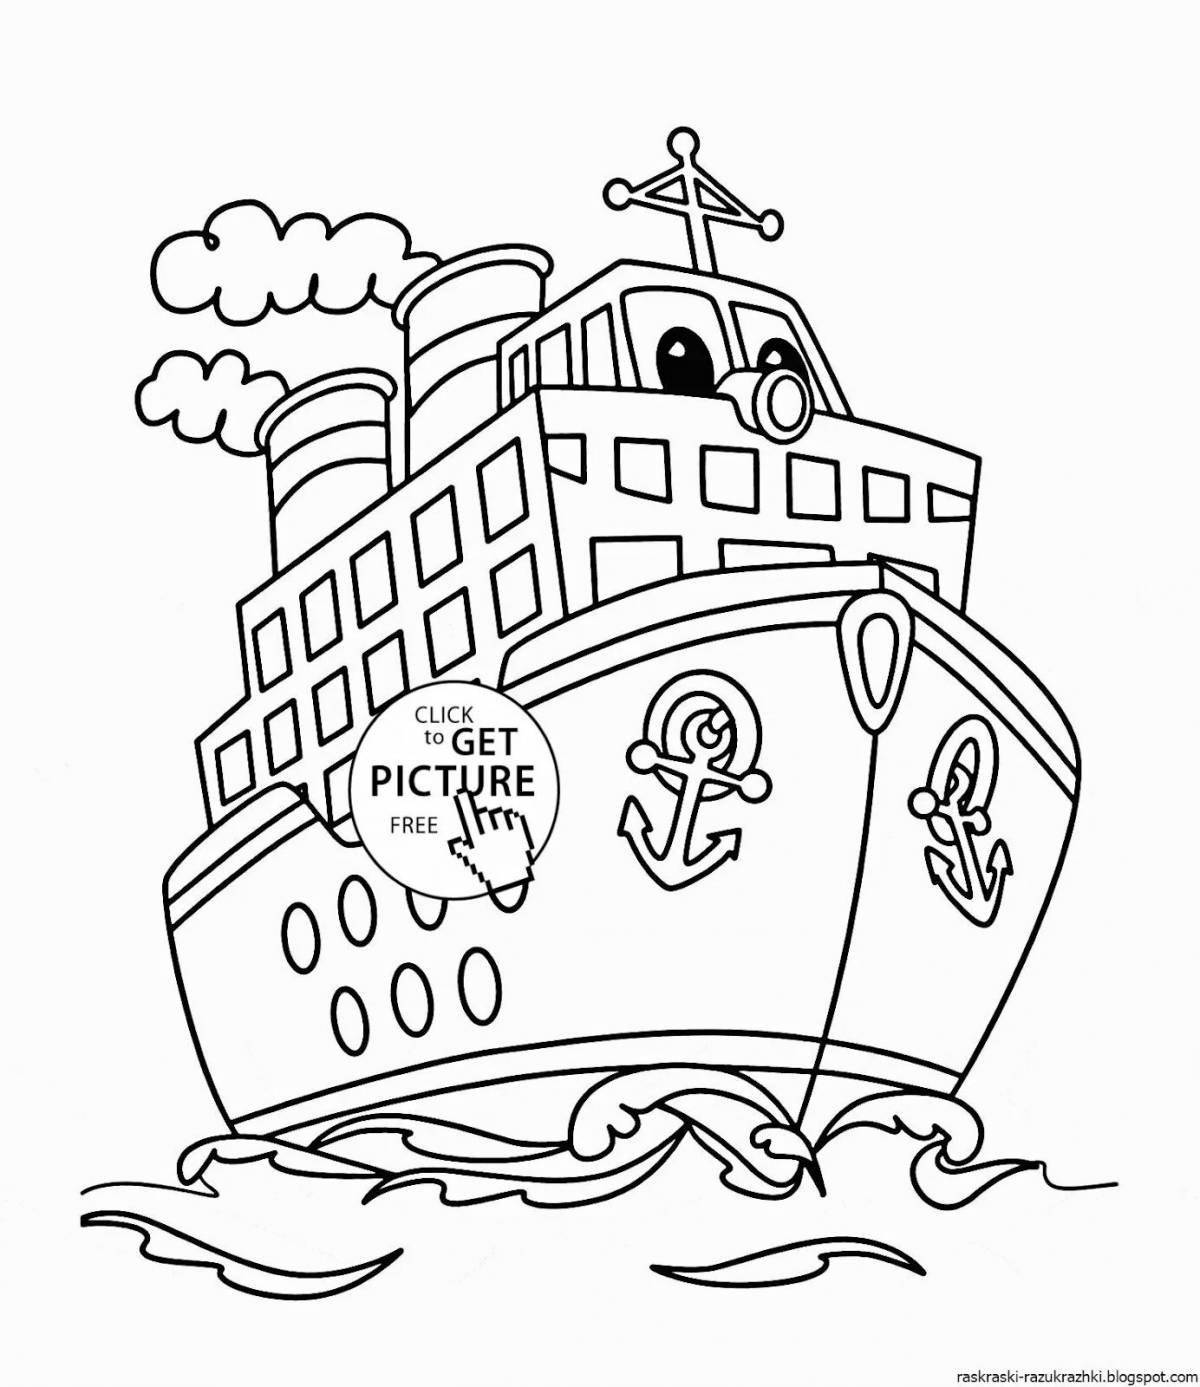 Великолепная раскраска парохода для детей